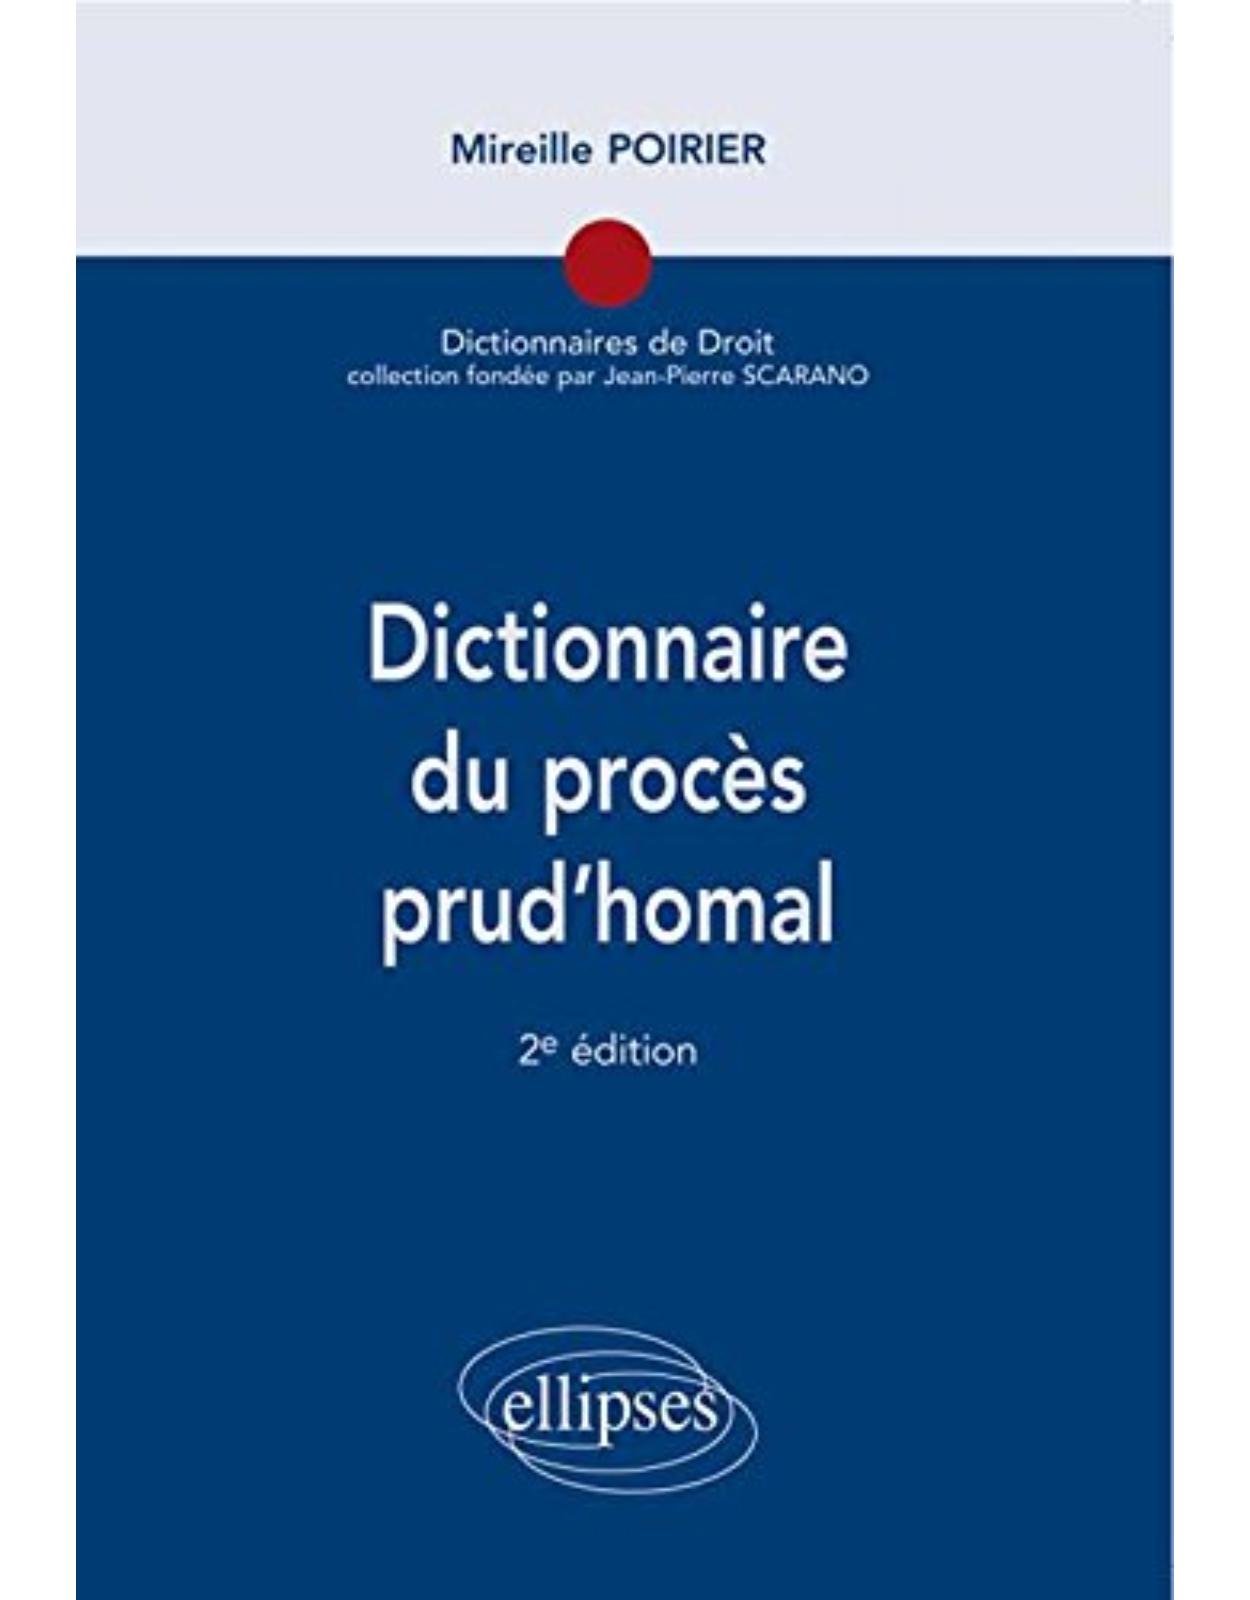 Dictionnaire du procès prud'homal 